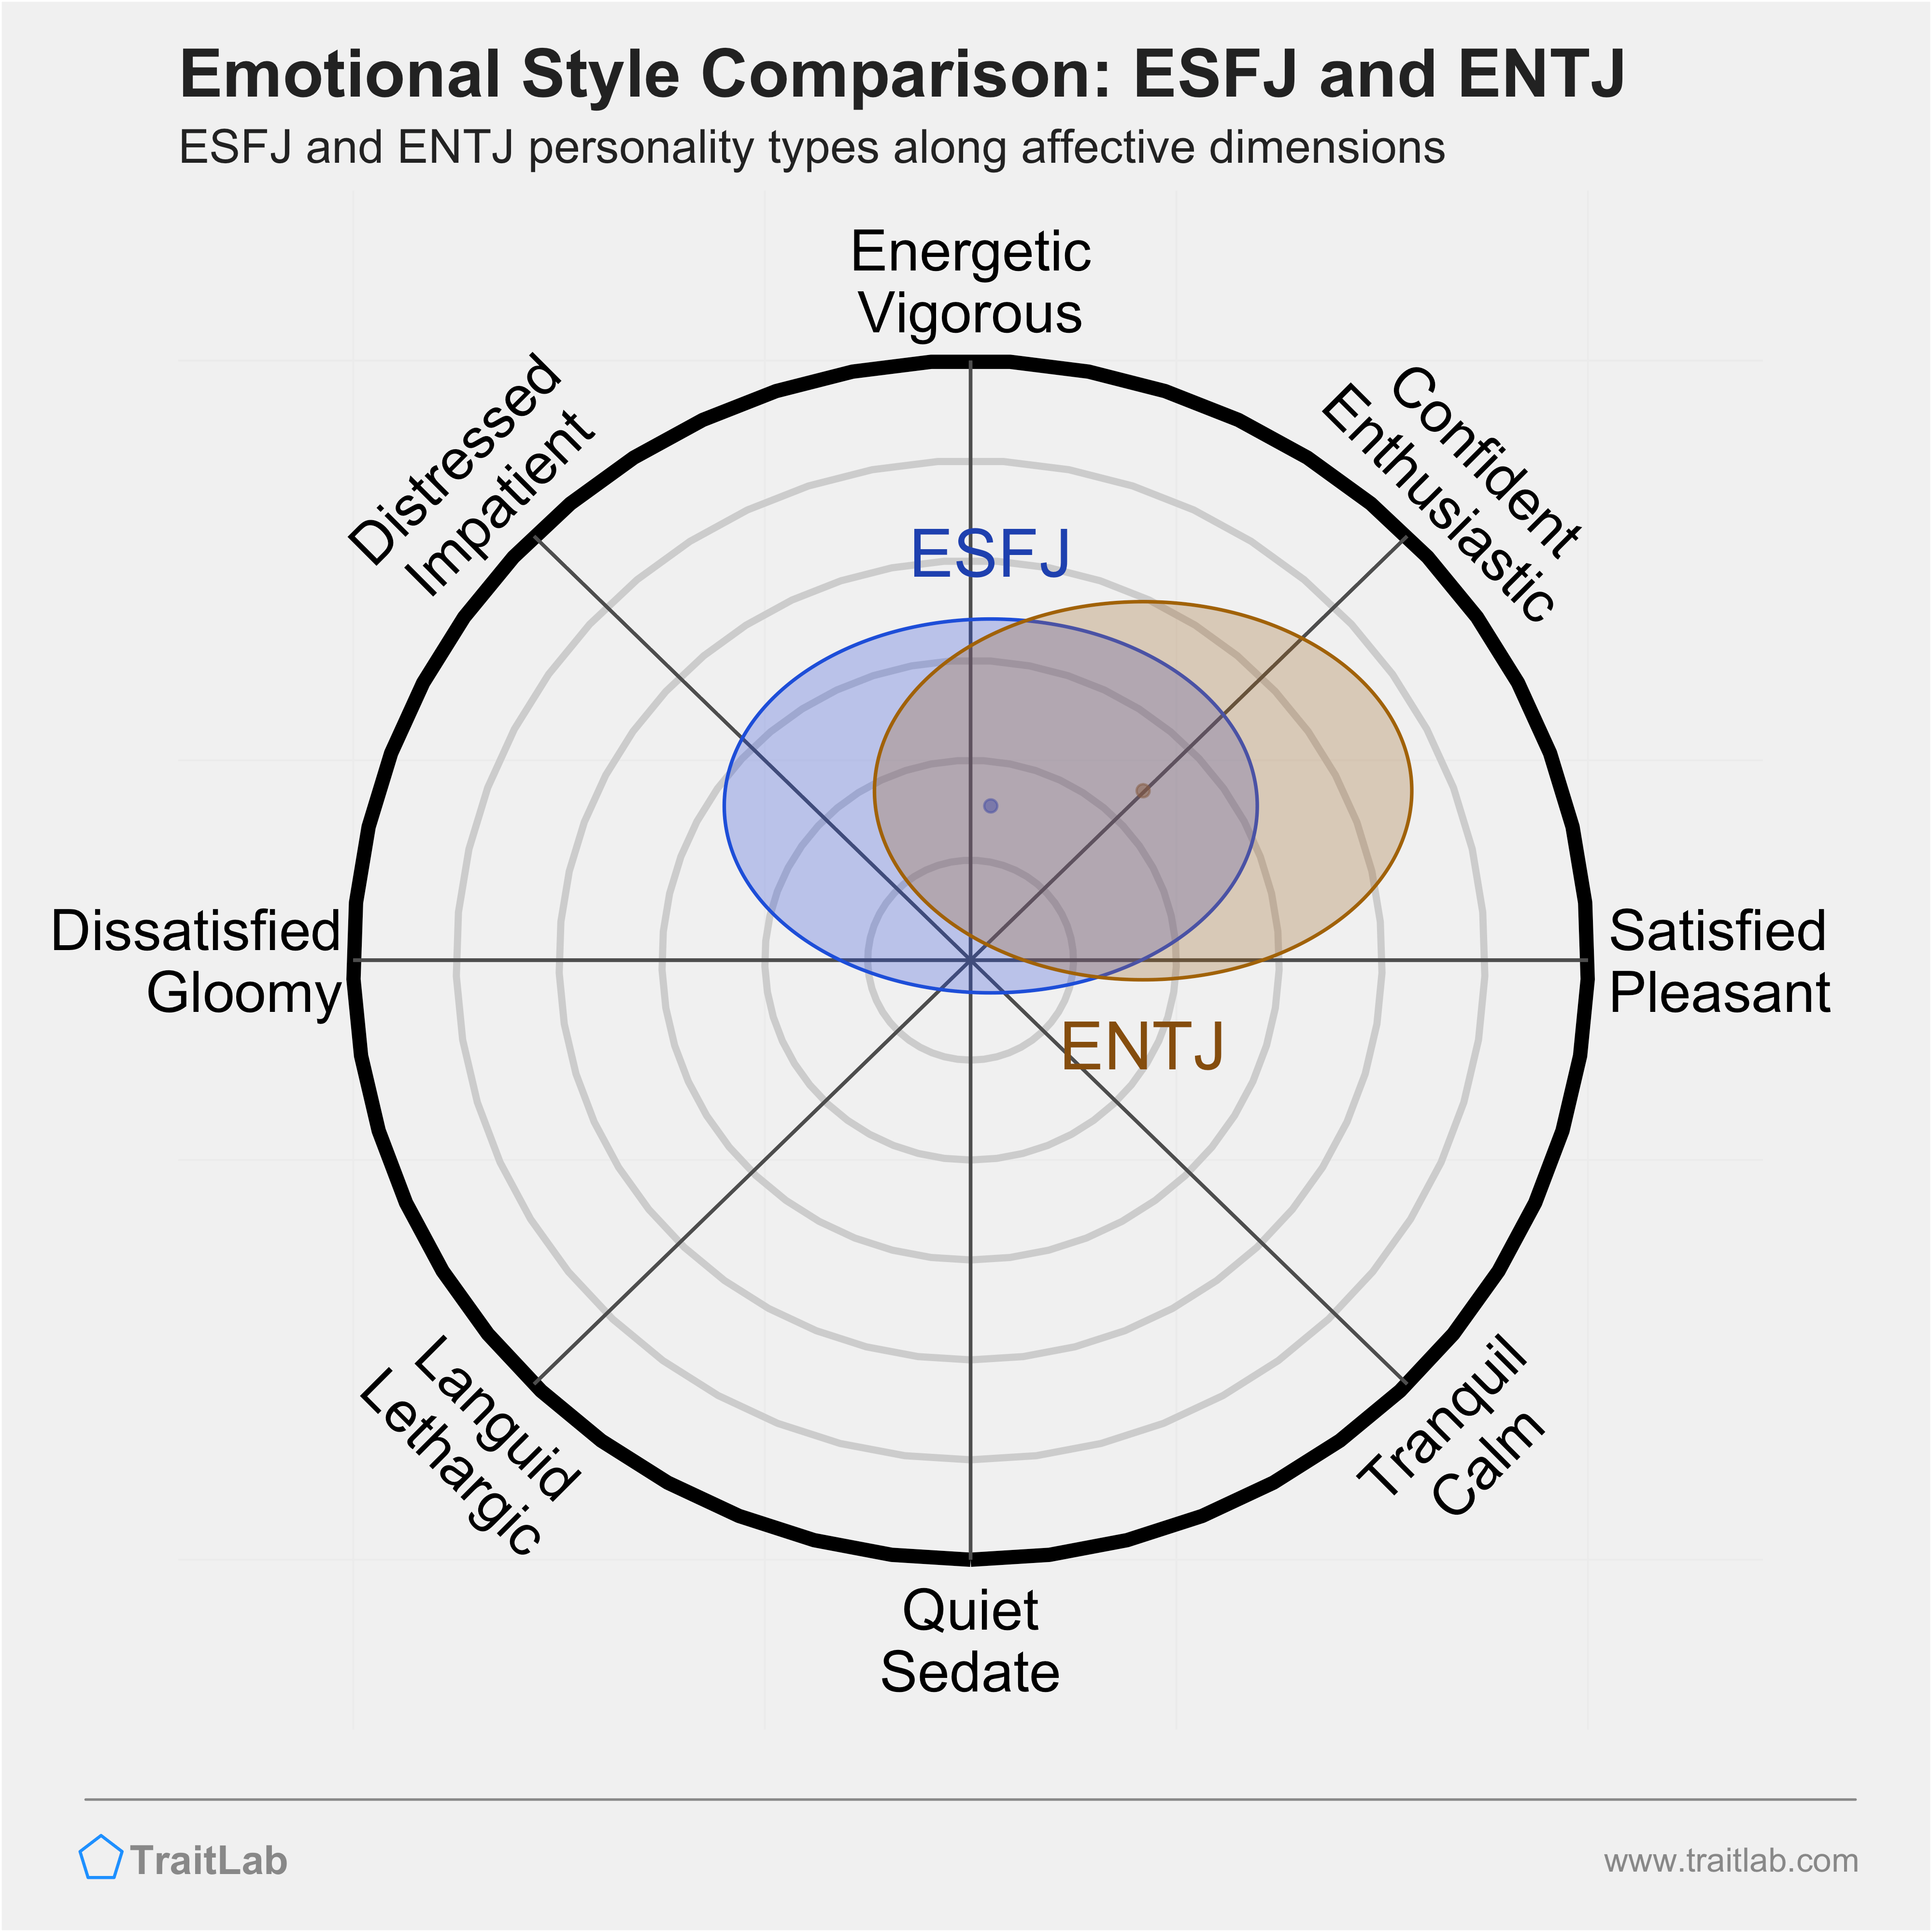 ESFJ and ENTJ comparison across emotional (affective) dimensions